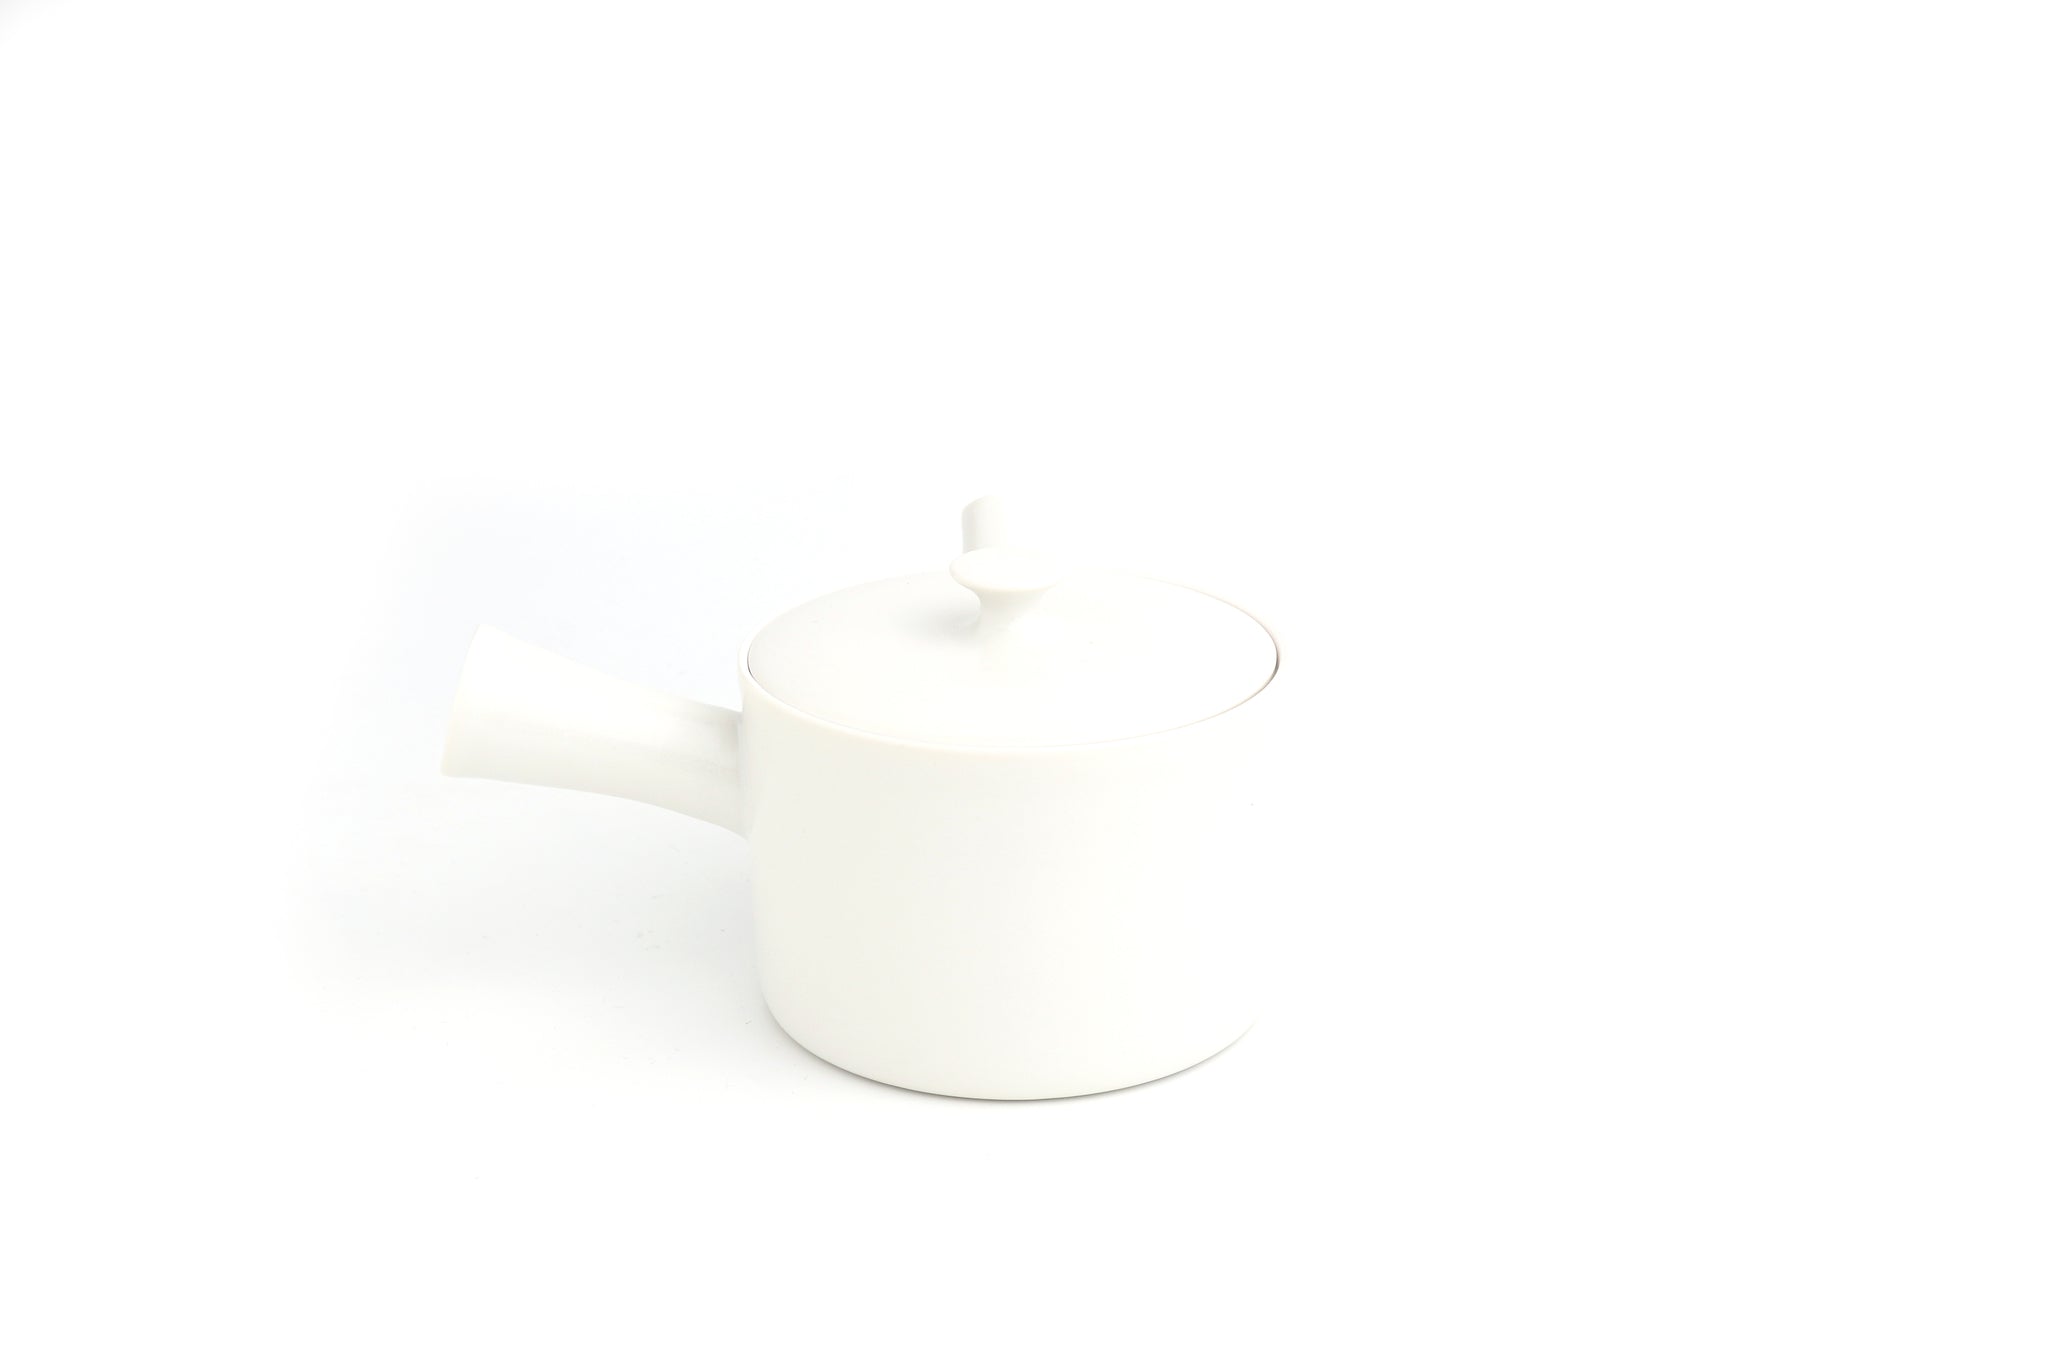 إبريق شاي | إيهوشي يوميكو | الحجم الصغير (S) | أثناء